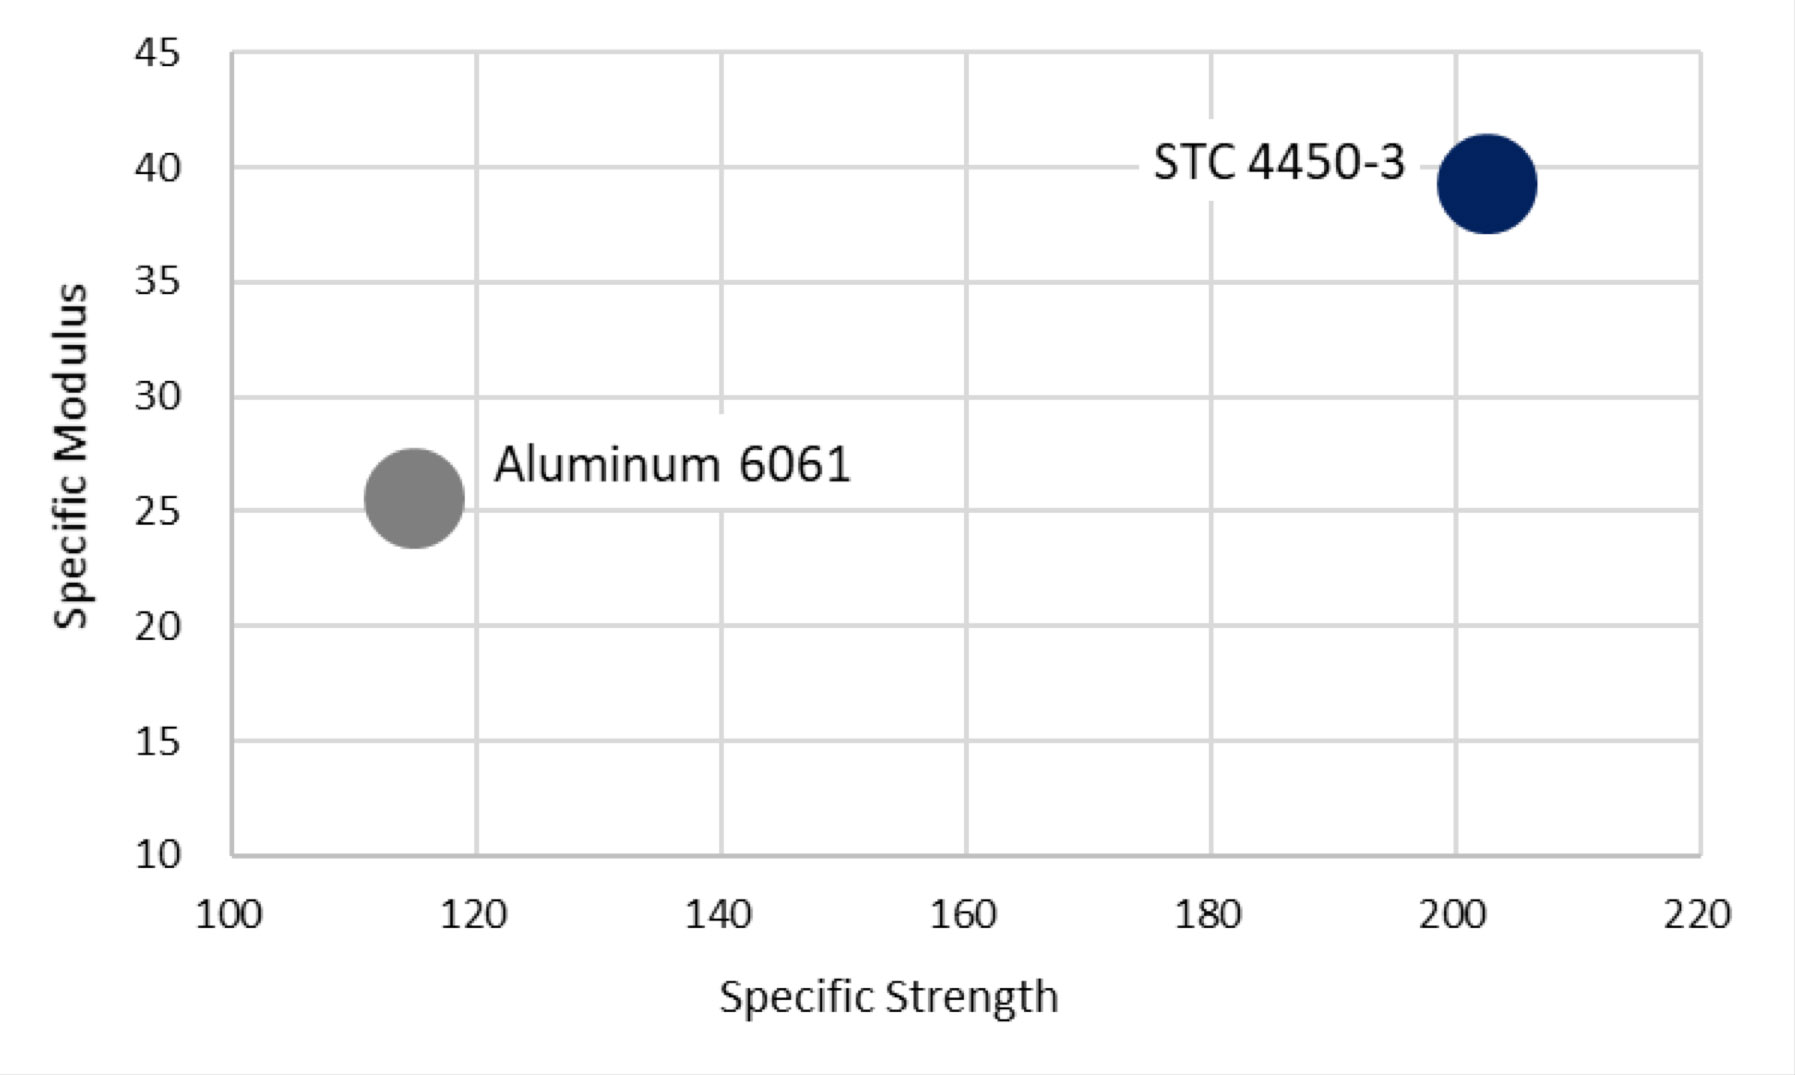 Fortium STC 4450 compared to aluminum